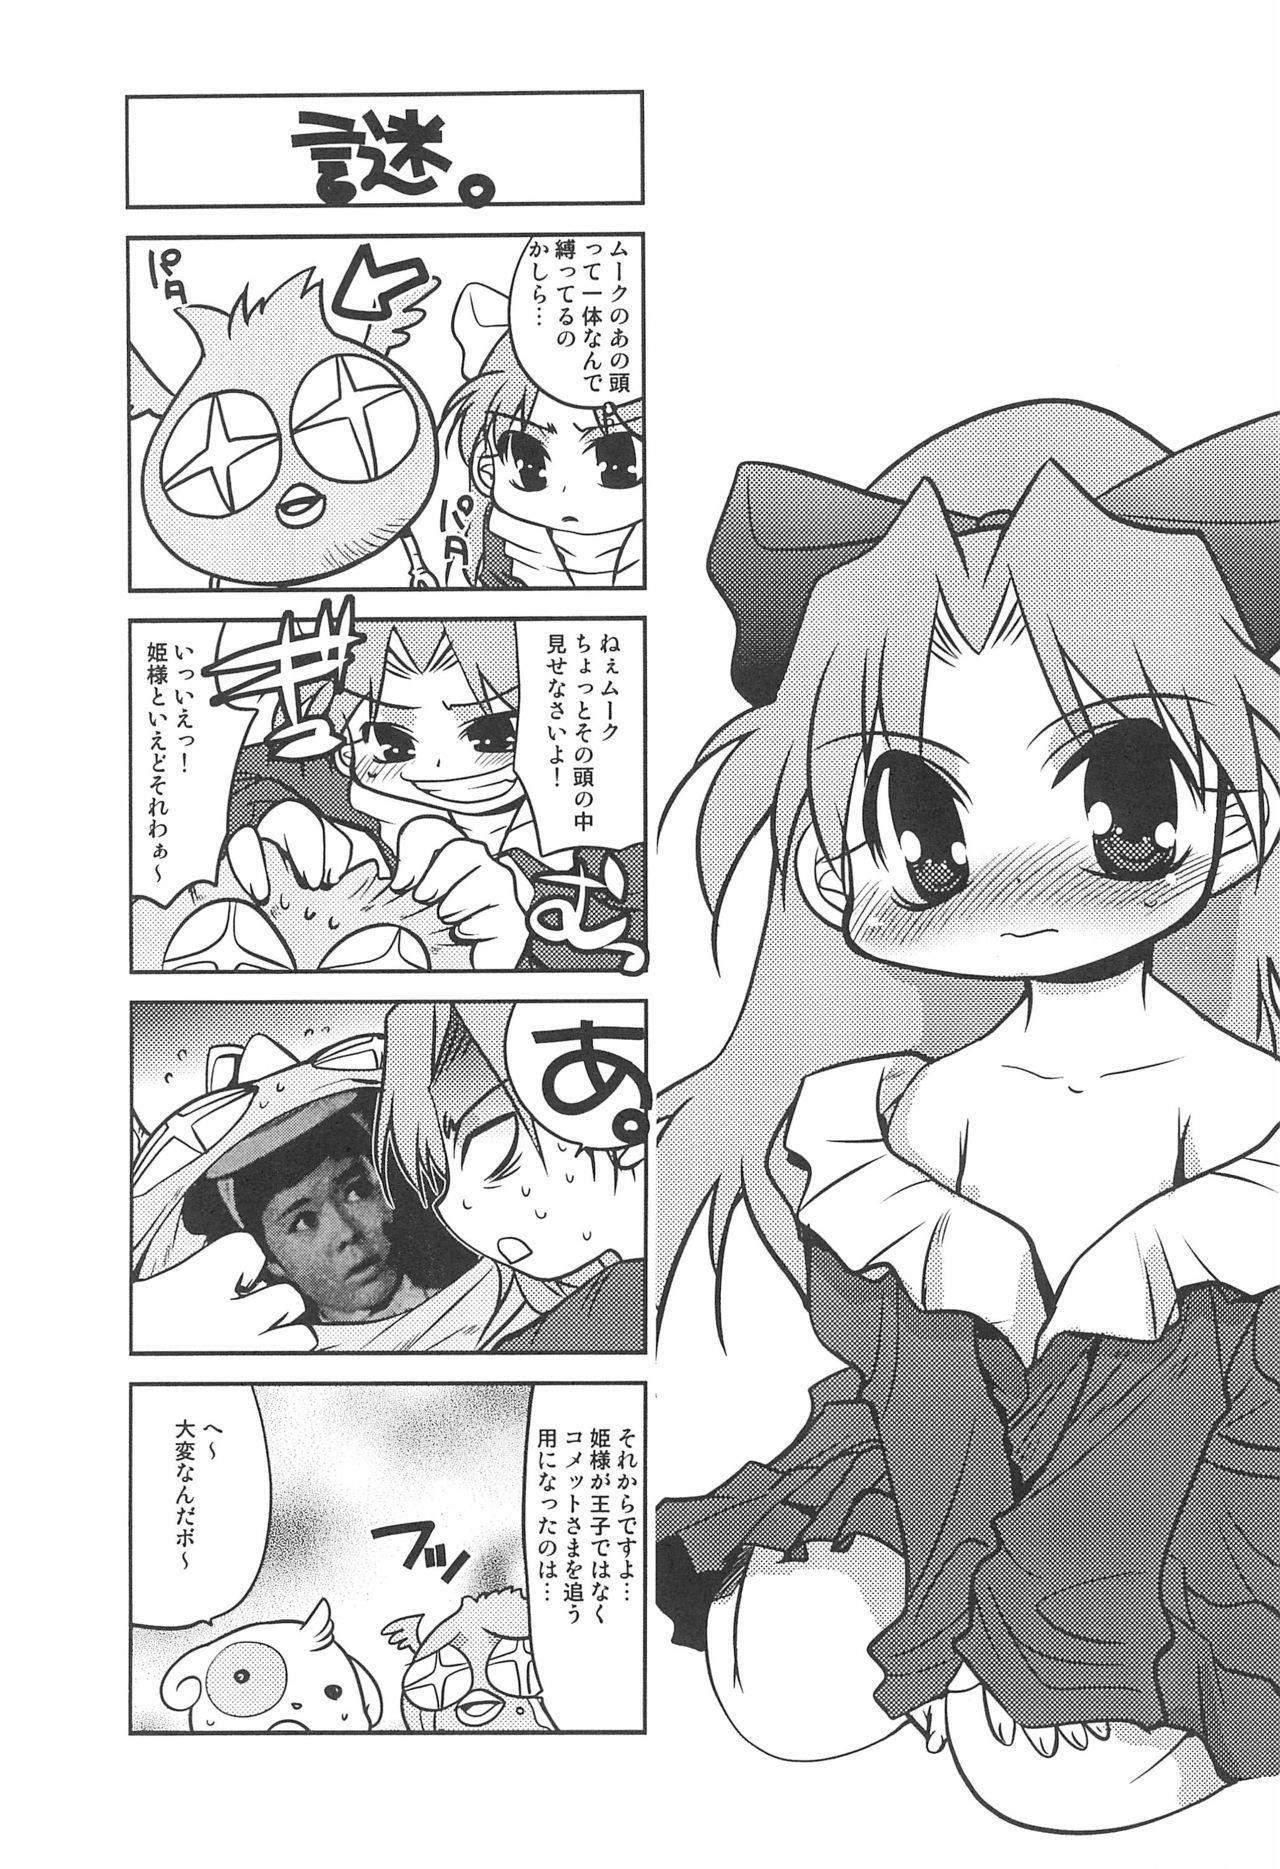 Comet-san Comical Comics 29